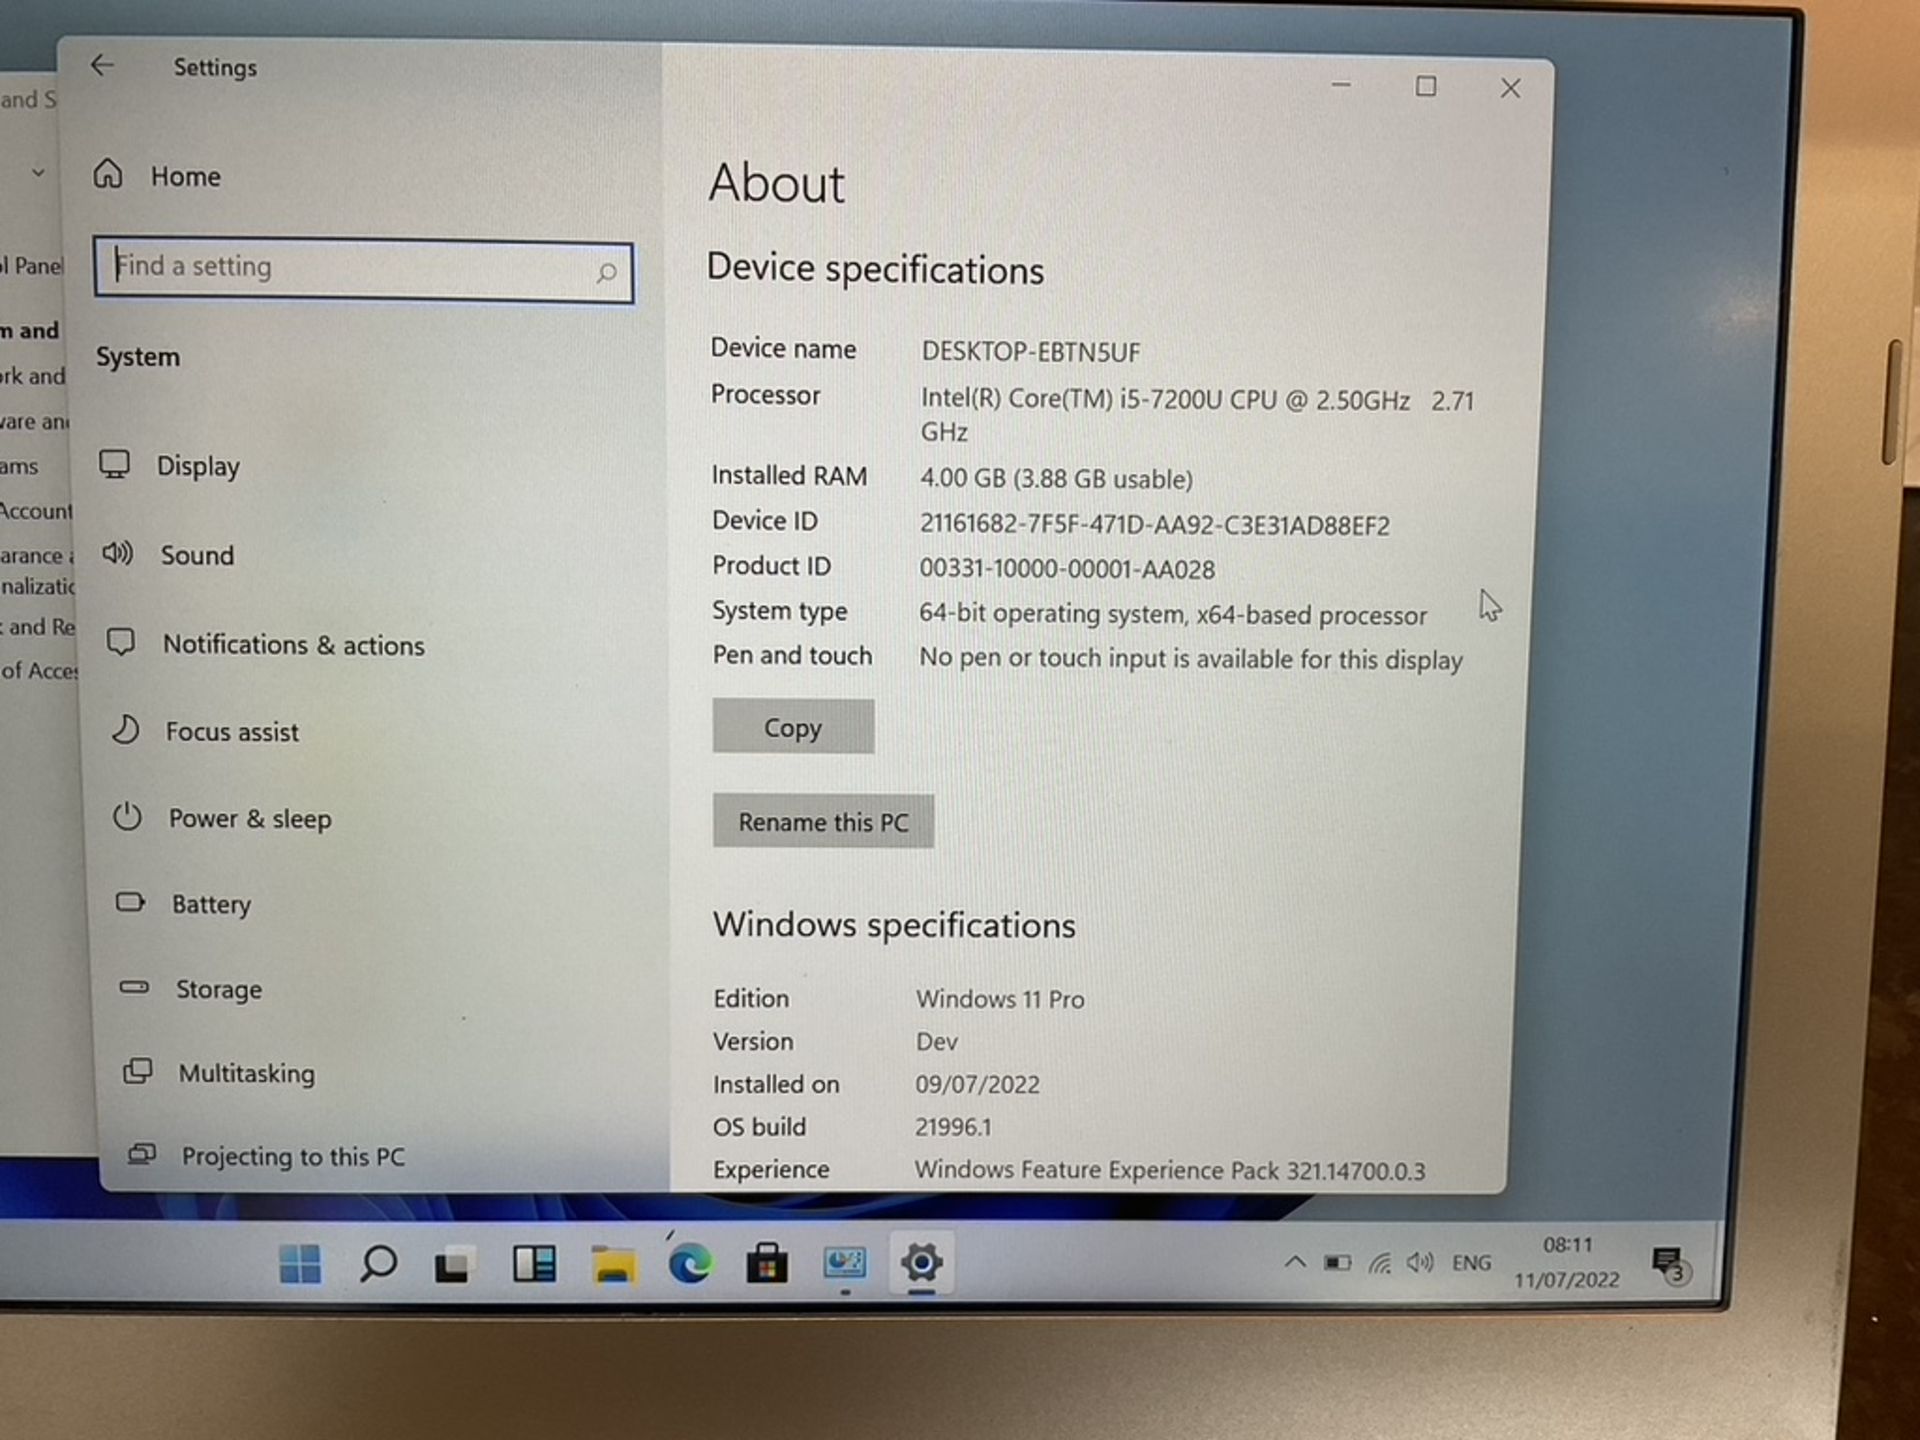 CLEVO N131WU Windows 11 Laptop 13"" Intel Core i5-7200U 4GB DDR4 120GB SSD WiFi Webcam HDMI Office - Image 3 of 8